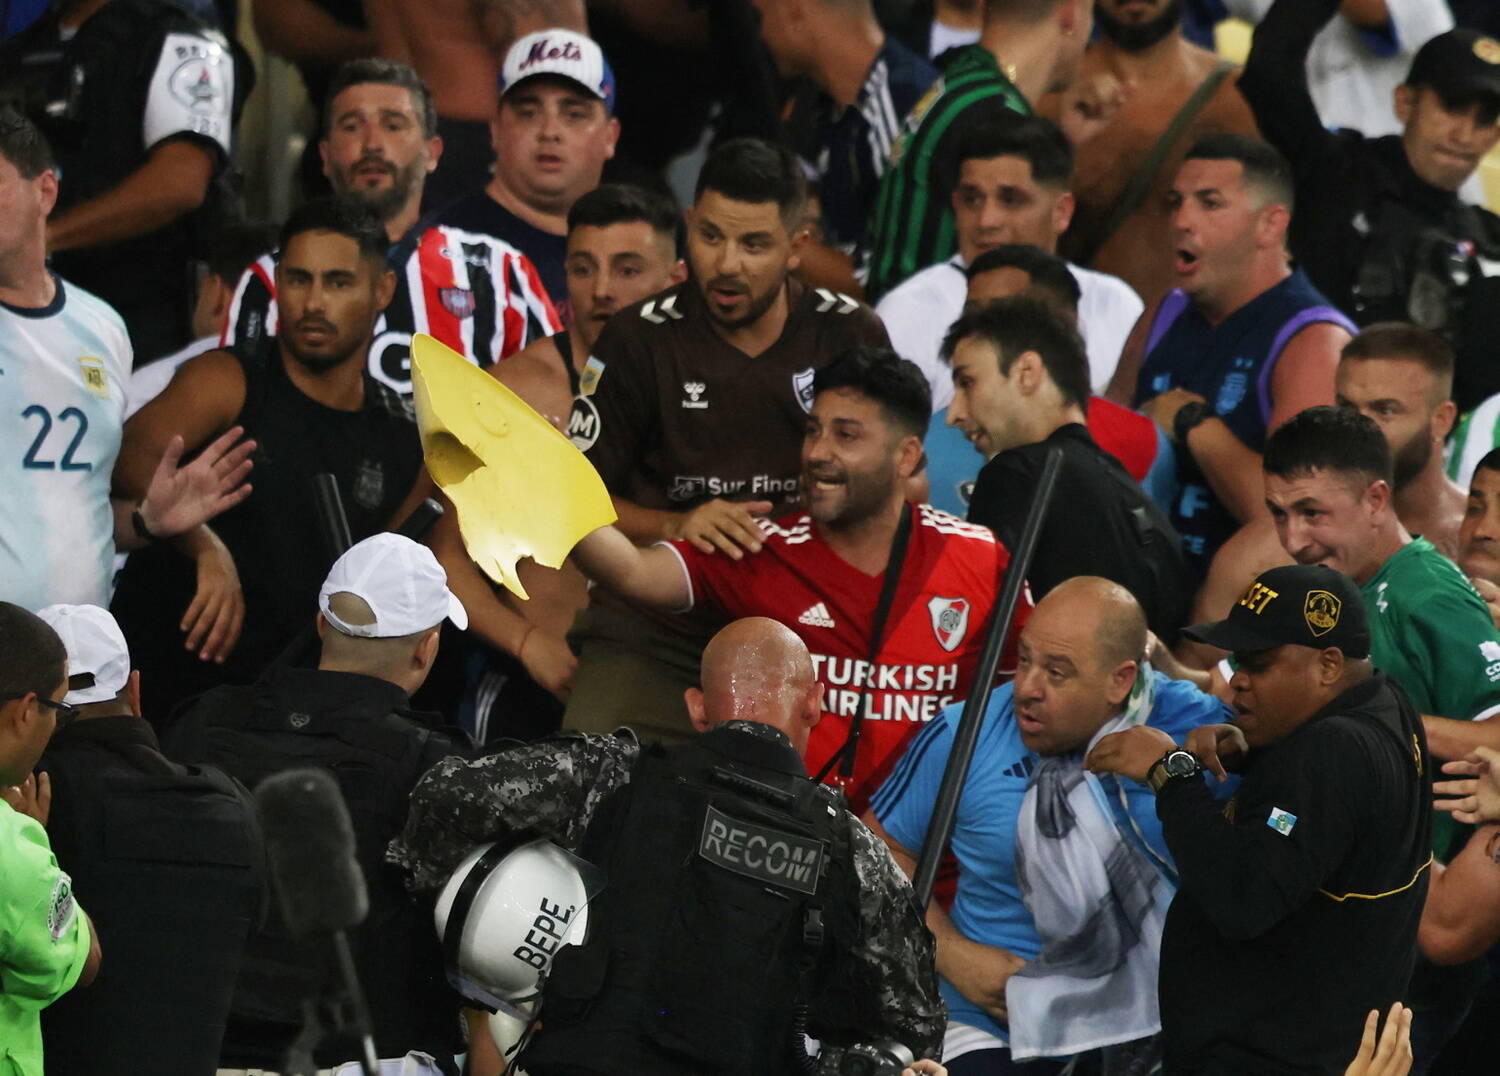 Brasil x Argentina: um duelo de gigantes com muito a perder